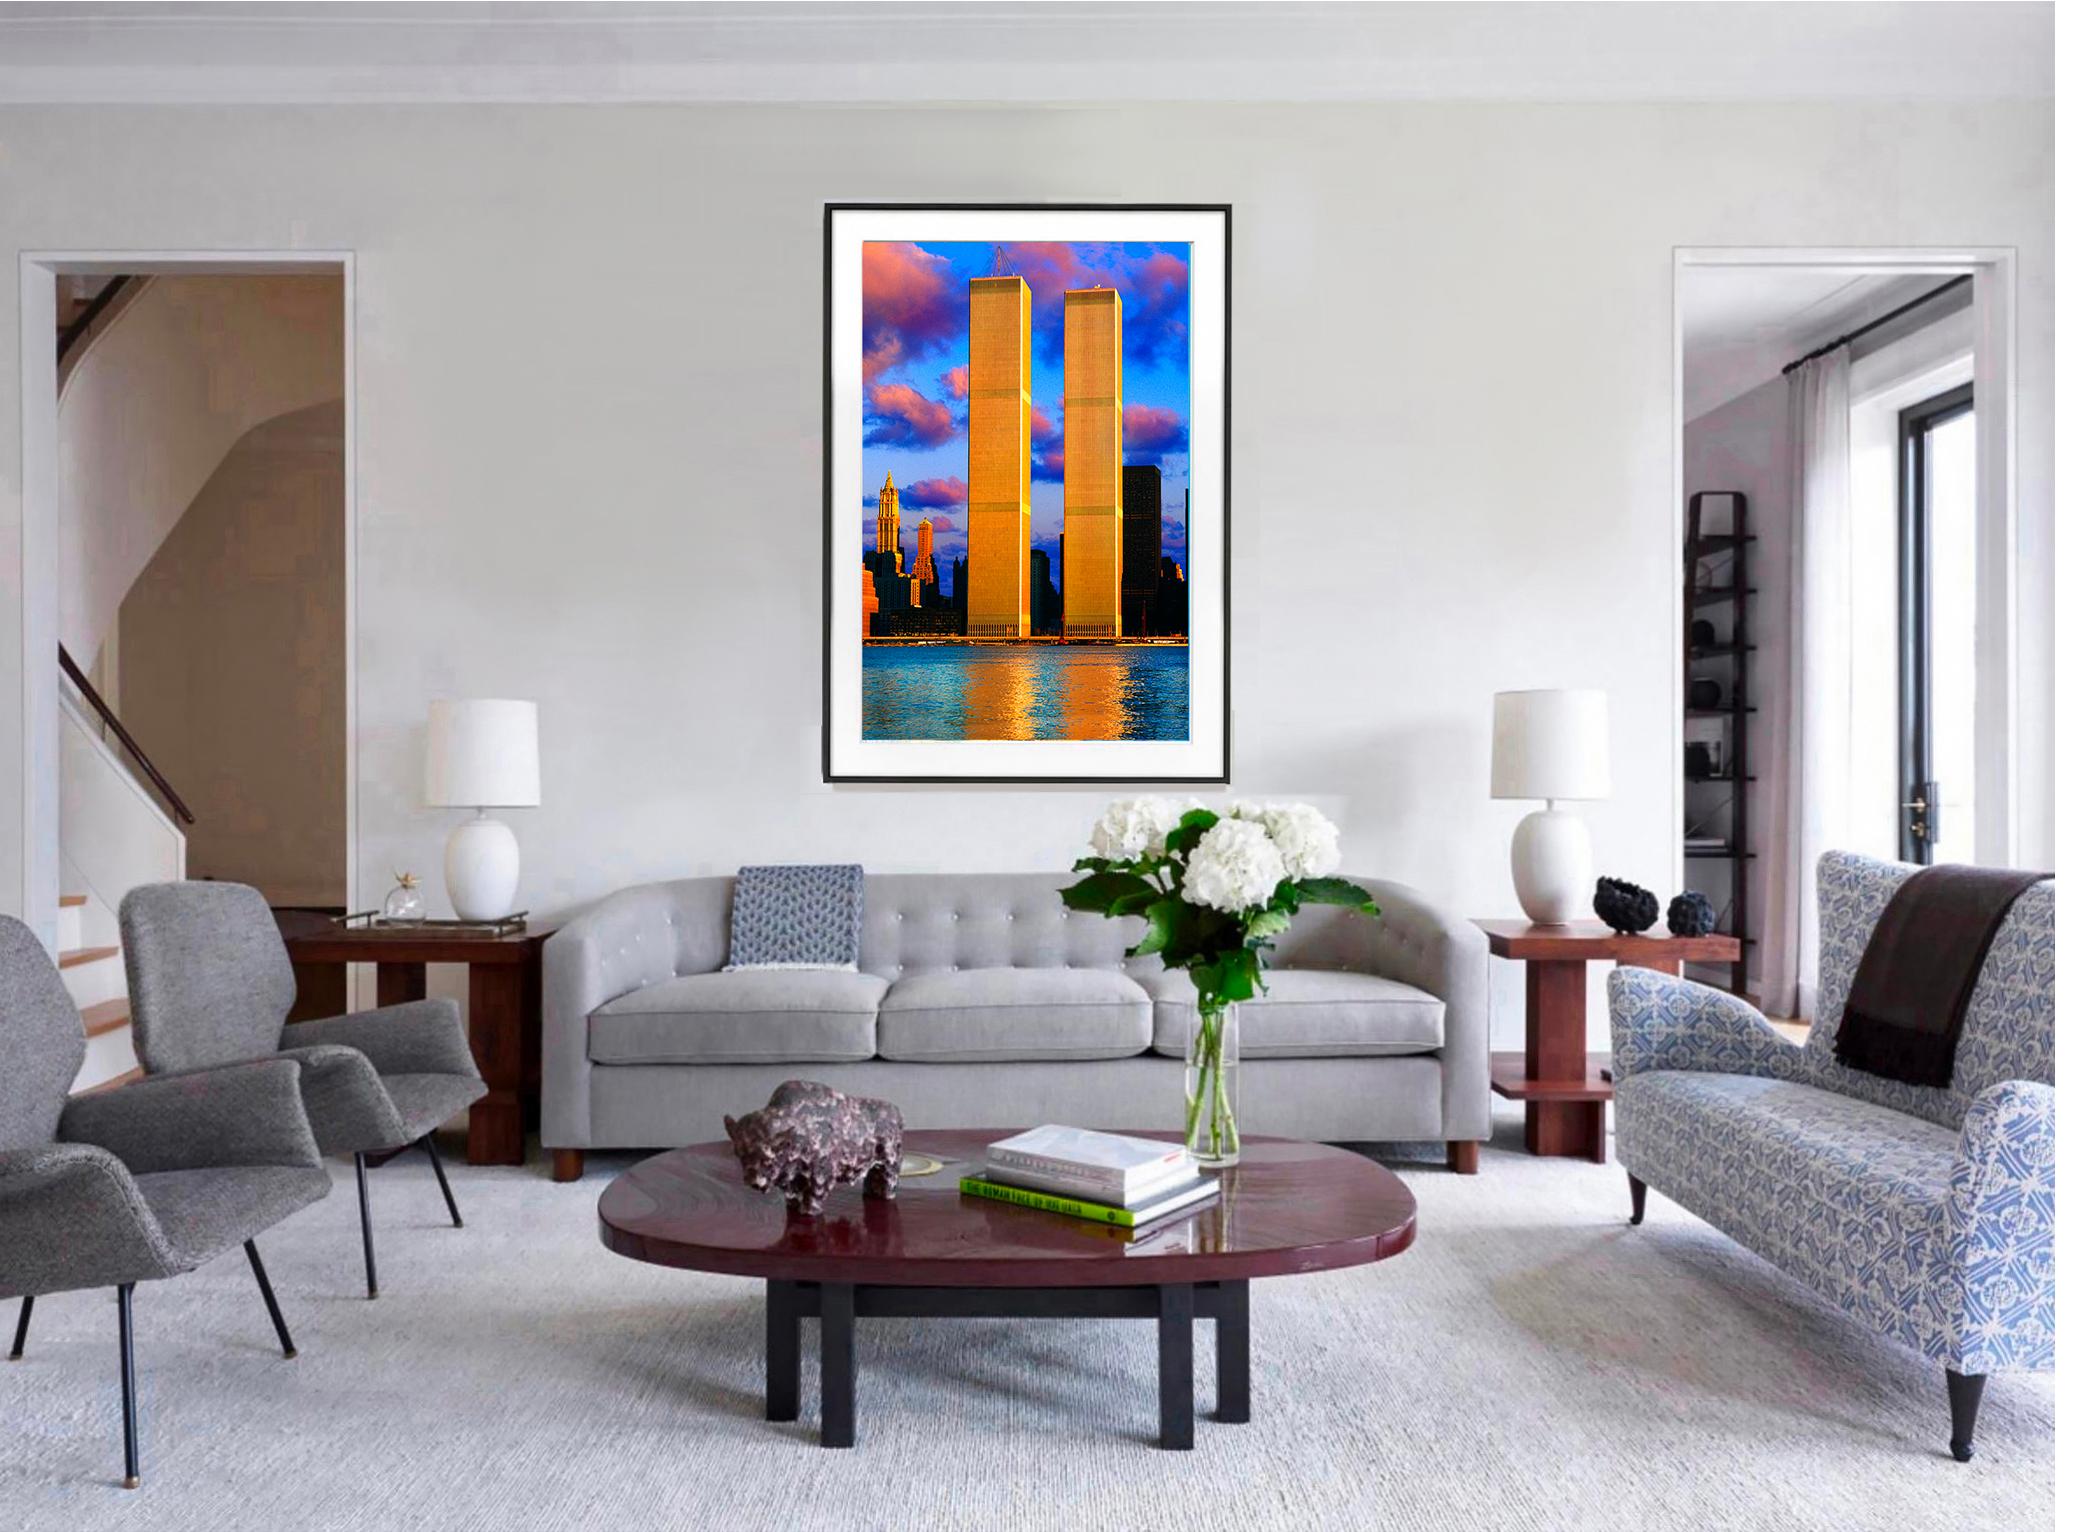 9/11 – Twin Towers in Angelic Light, Architektur  (Amerikanische Moderne), Photograph, von Mitchell Funk